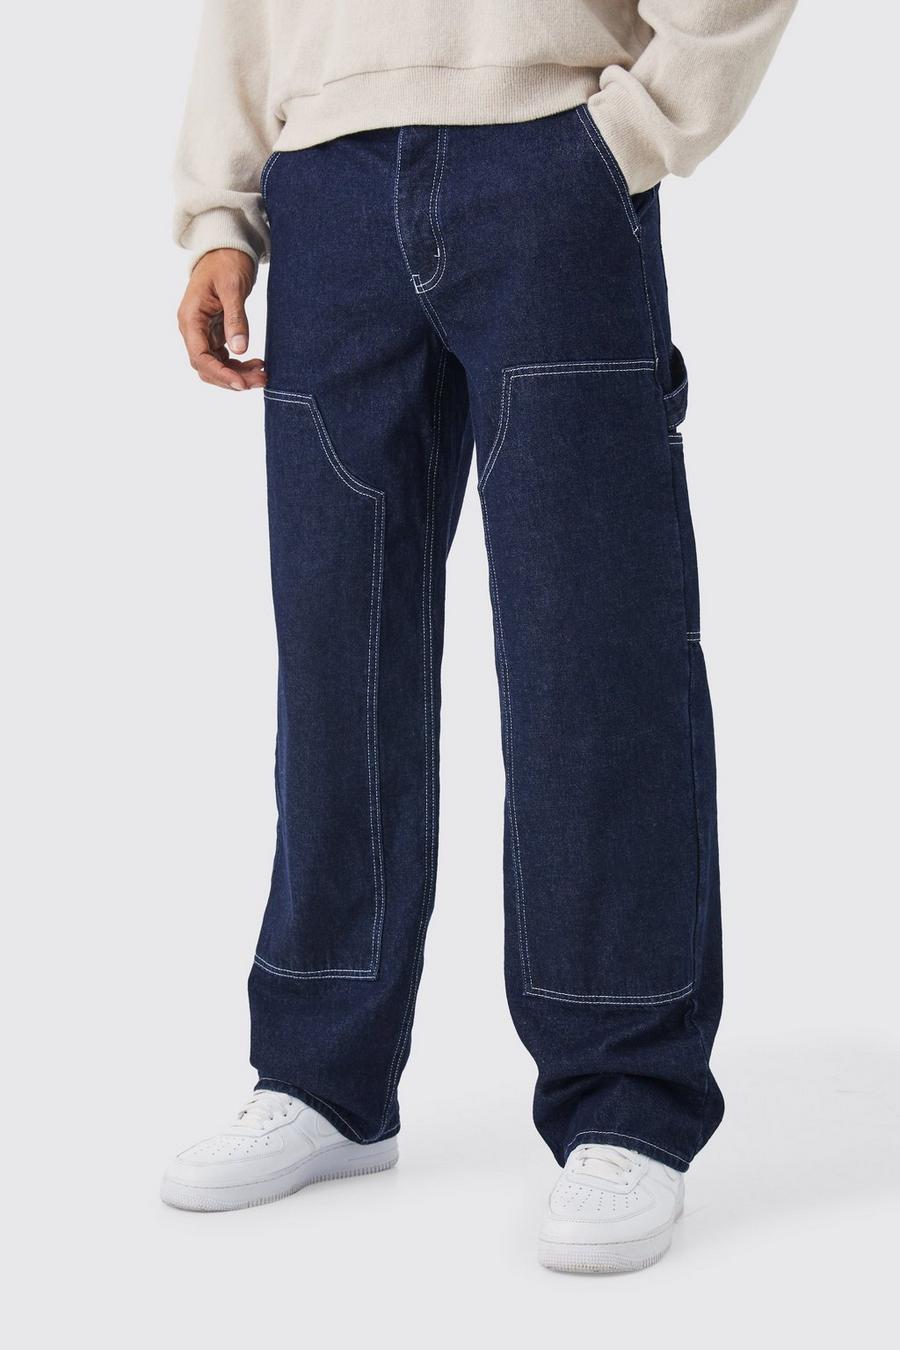 Indigo blue Baggy jeans i rigid denim